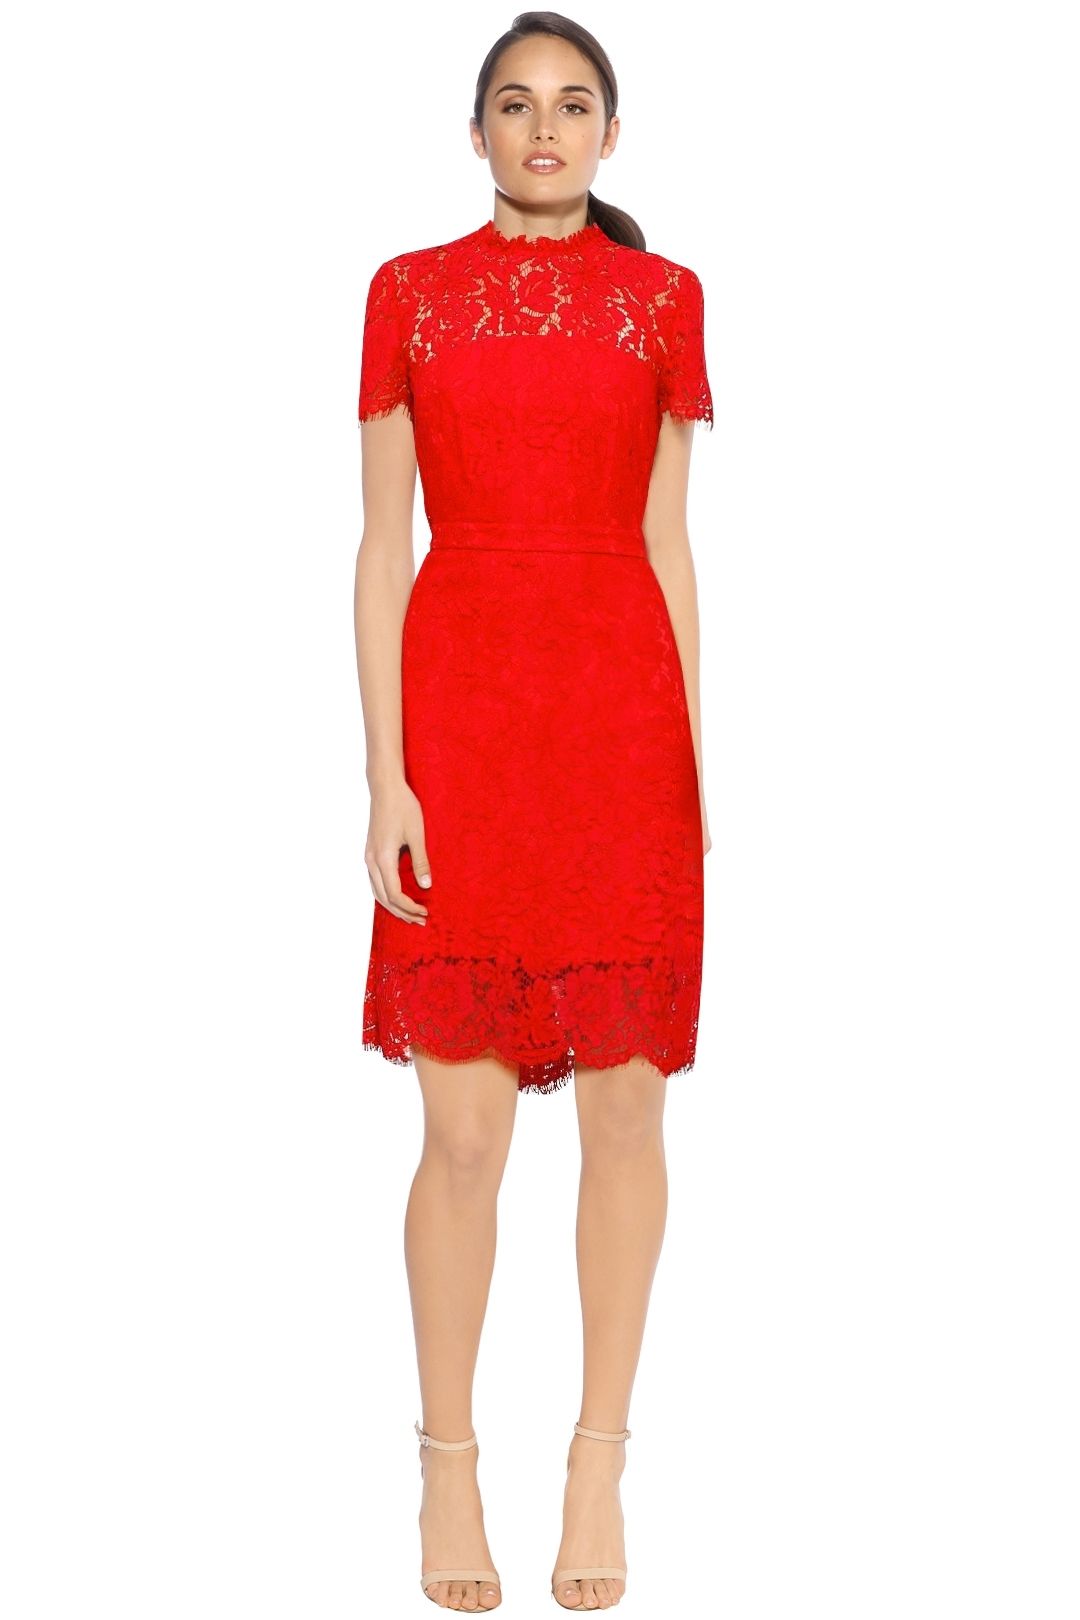 Diane Von Furstenberg - Alma Short Sleeve Dress - Red - Front